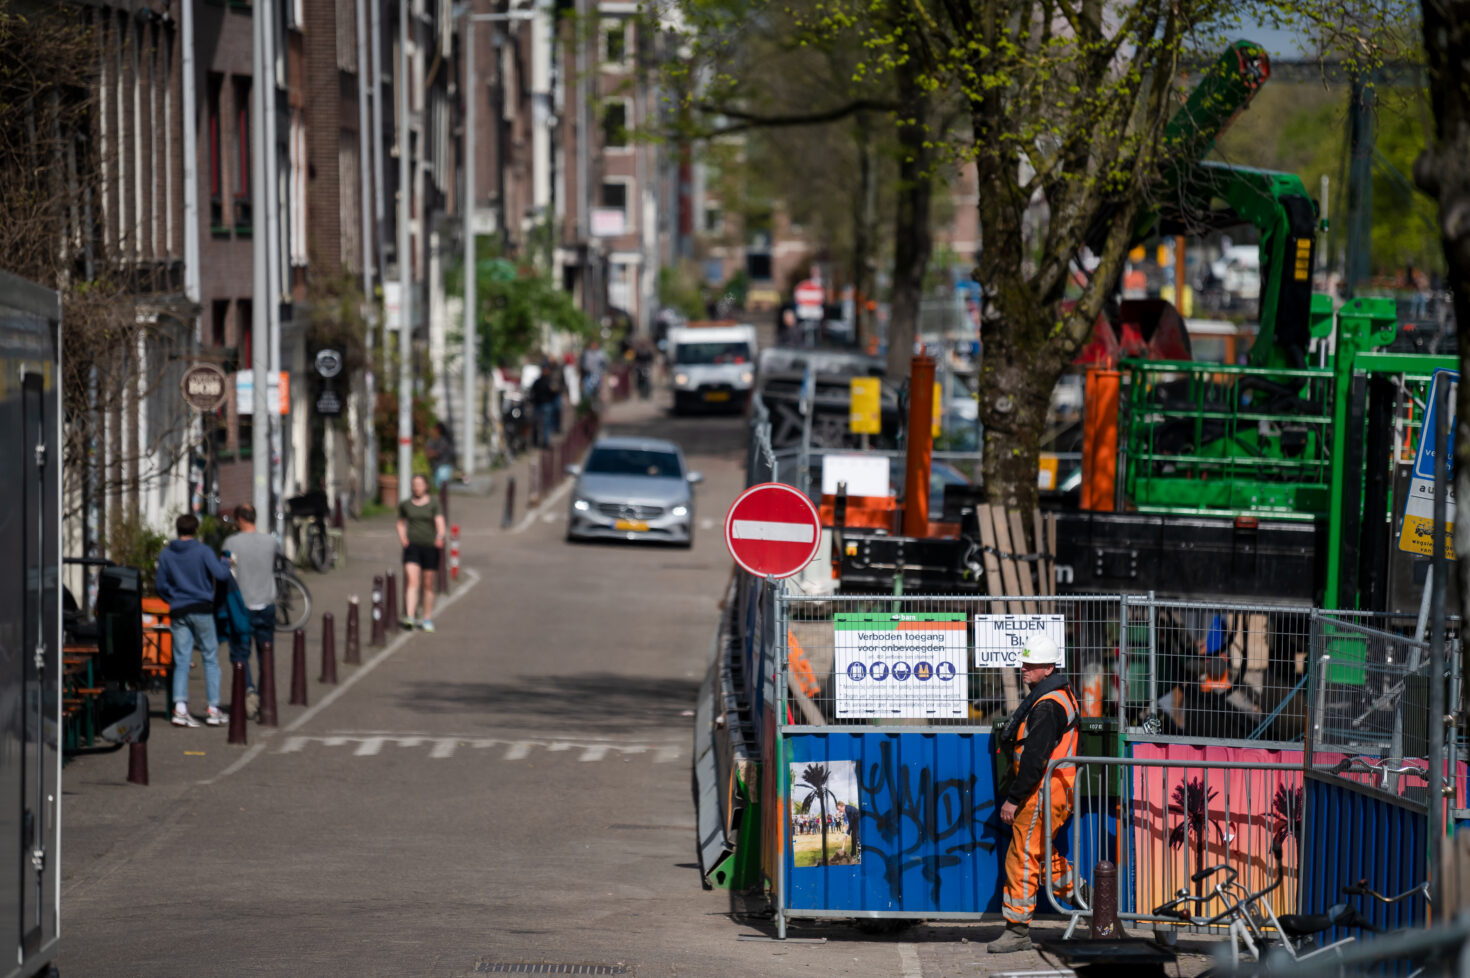 Kade aan de Brouwersgracht met auto's, wandelaars en aan de kant het werkterrein van Koningsgracht. De hekken steken iets uit maar de rijbaan blijft vrij voor het verkeer.